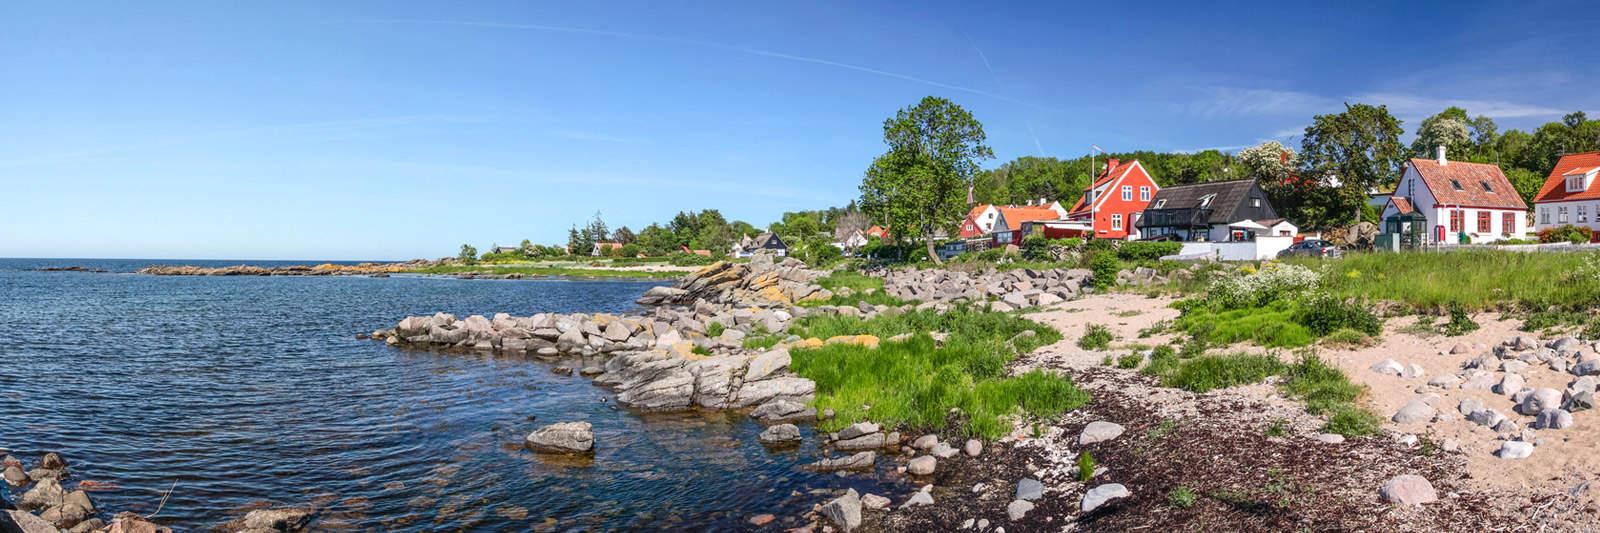 55 Ferienwohnungen und Ferienhäuser in Silkeborg - tourist-online.de